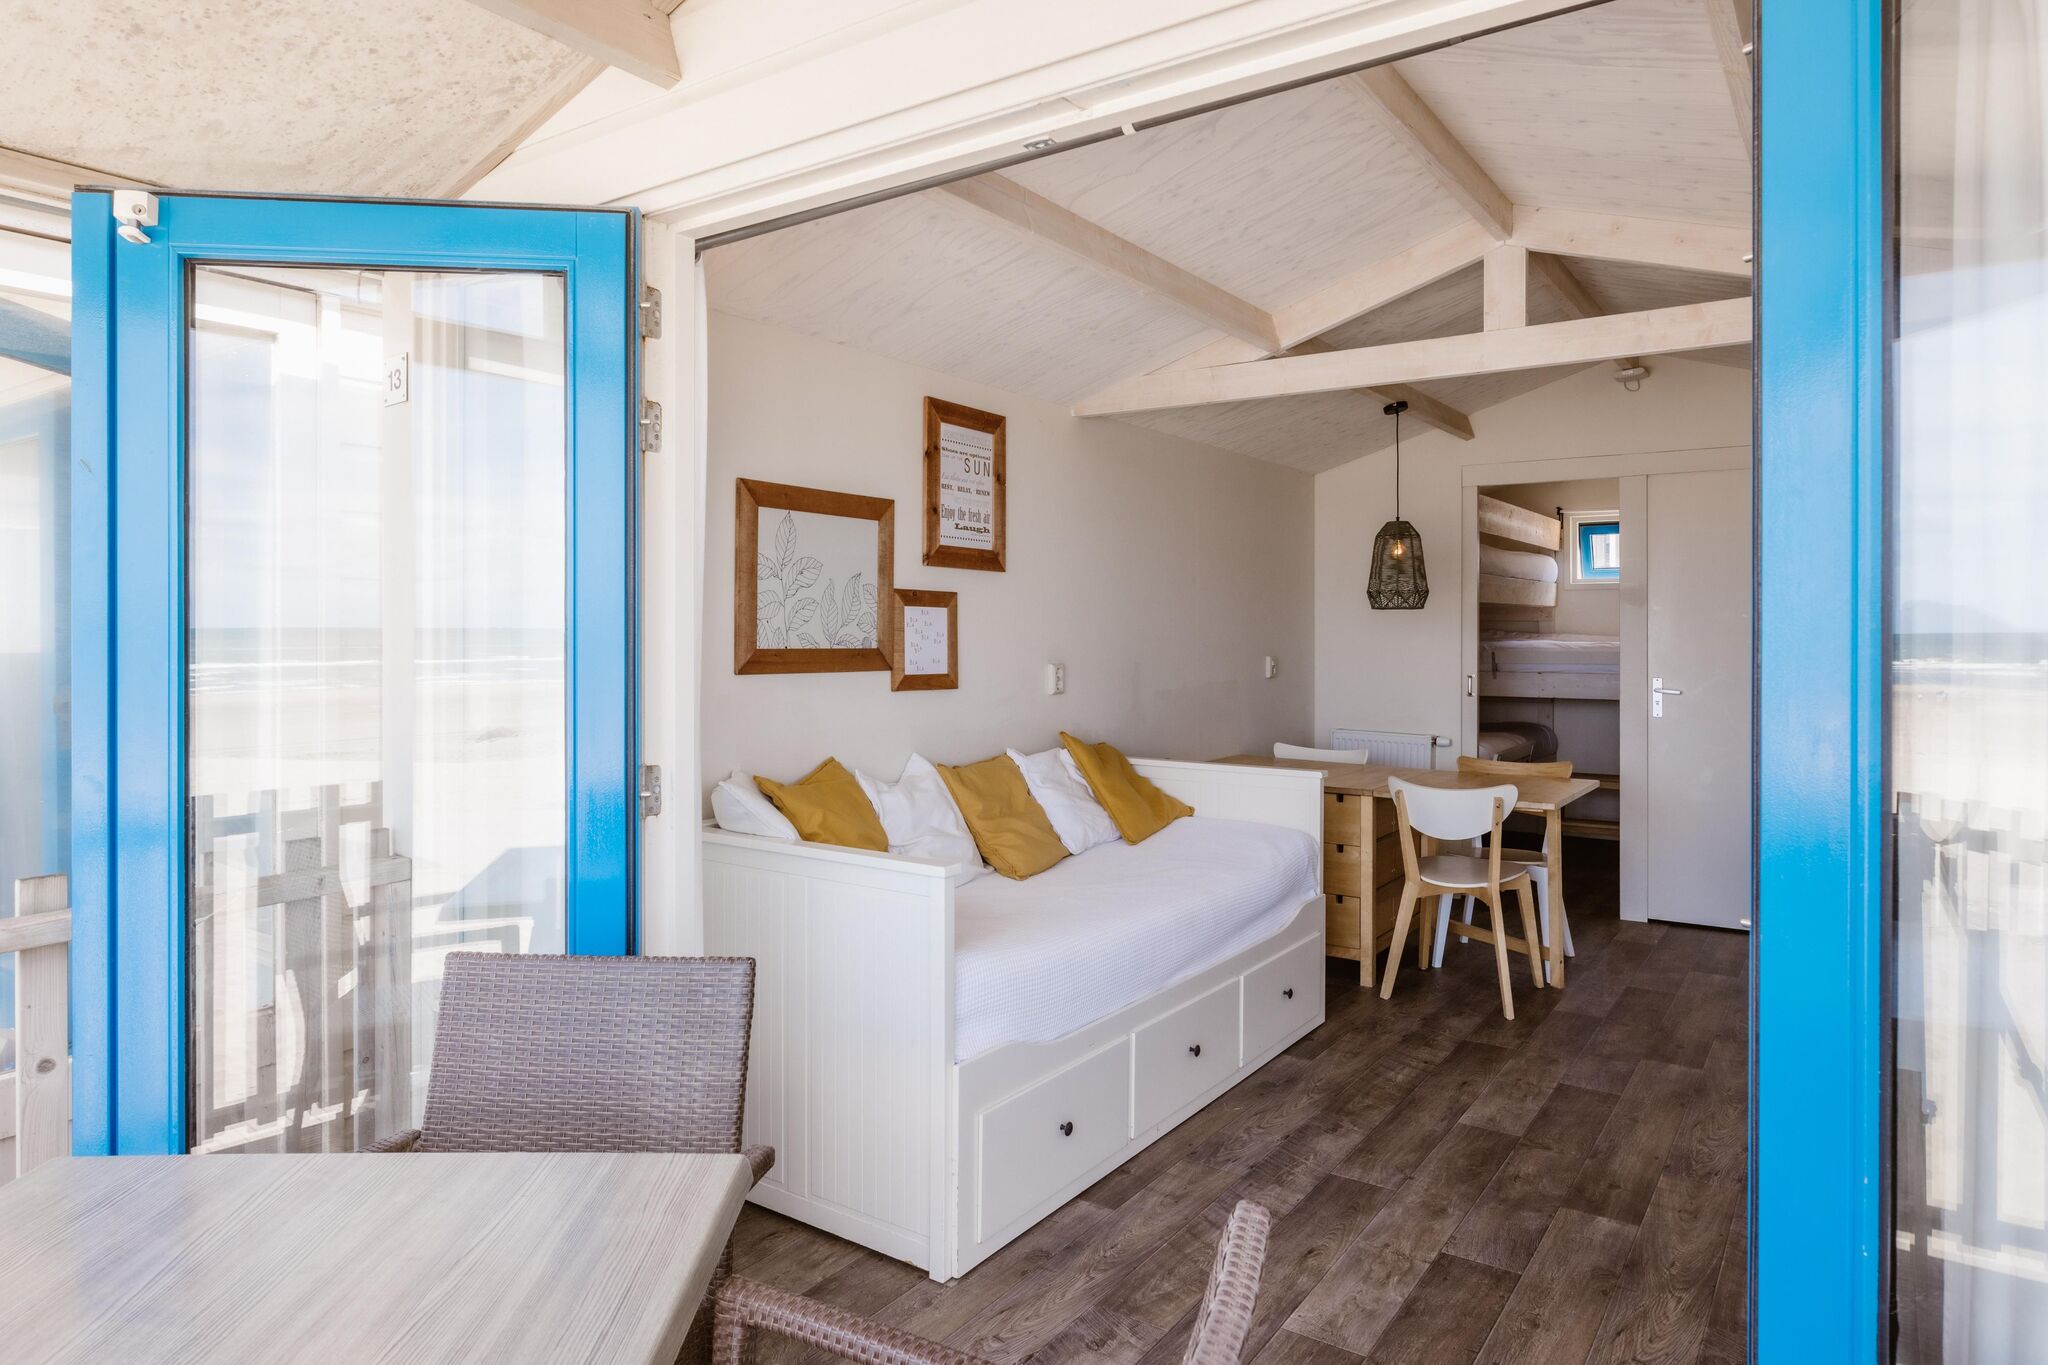 Vakantiehuis met direct zeezicht, op het Noordzeestrand van Wijk aan Zee